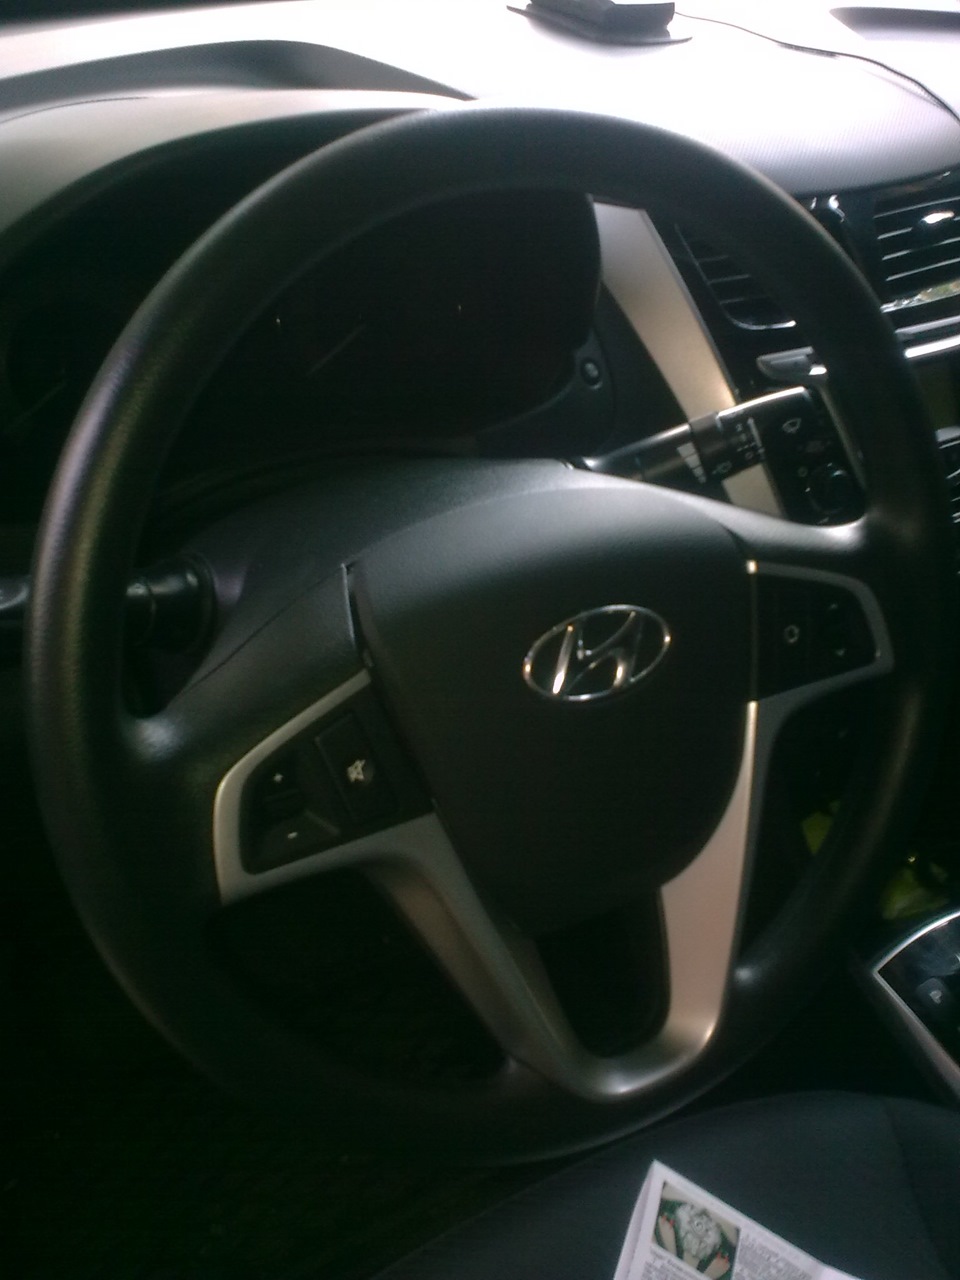 Устанавливаем передние колеса автомобиля в положение прямолинейного движения на автомобиле Hyundai Solaris